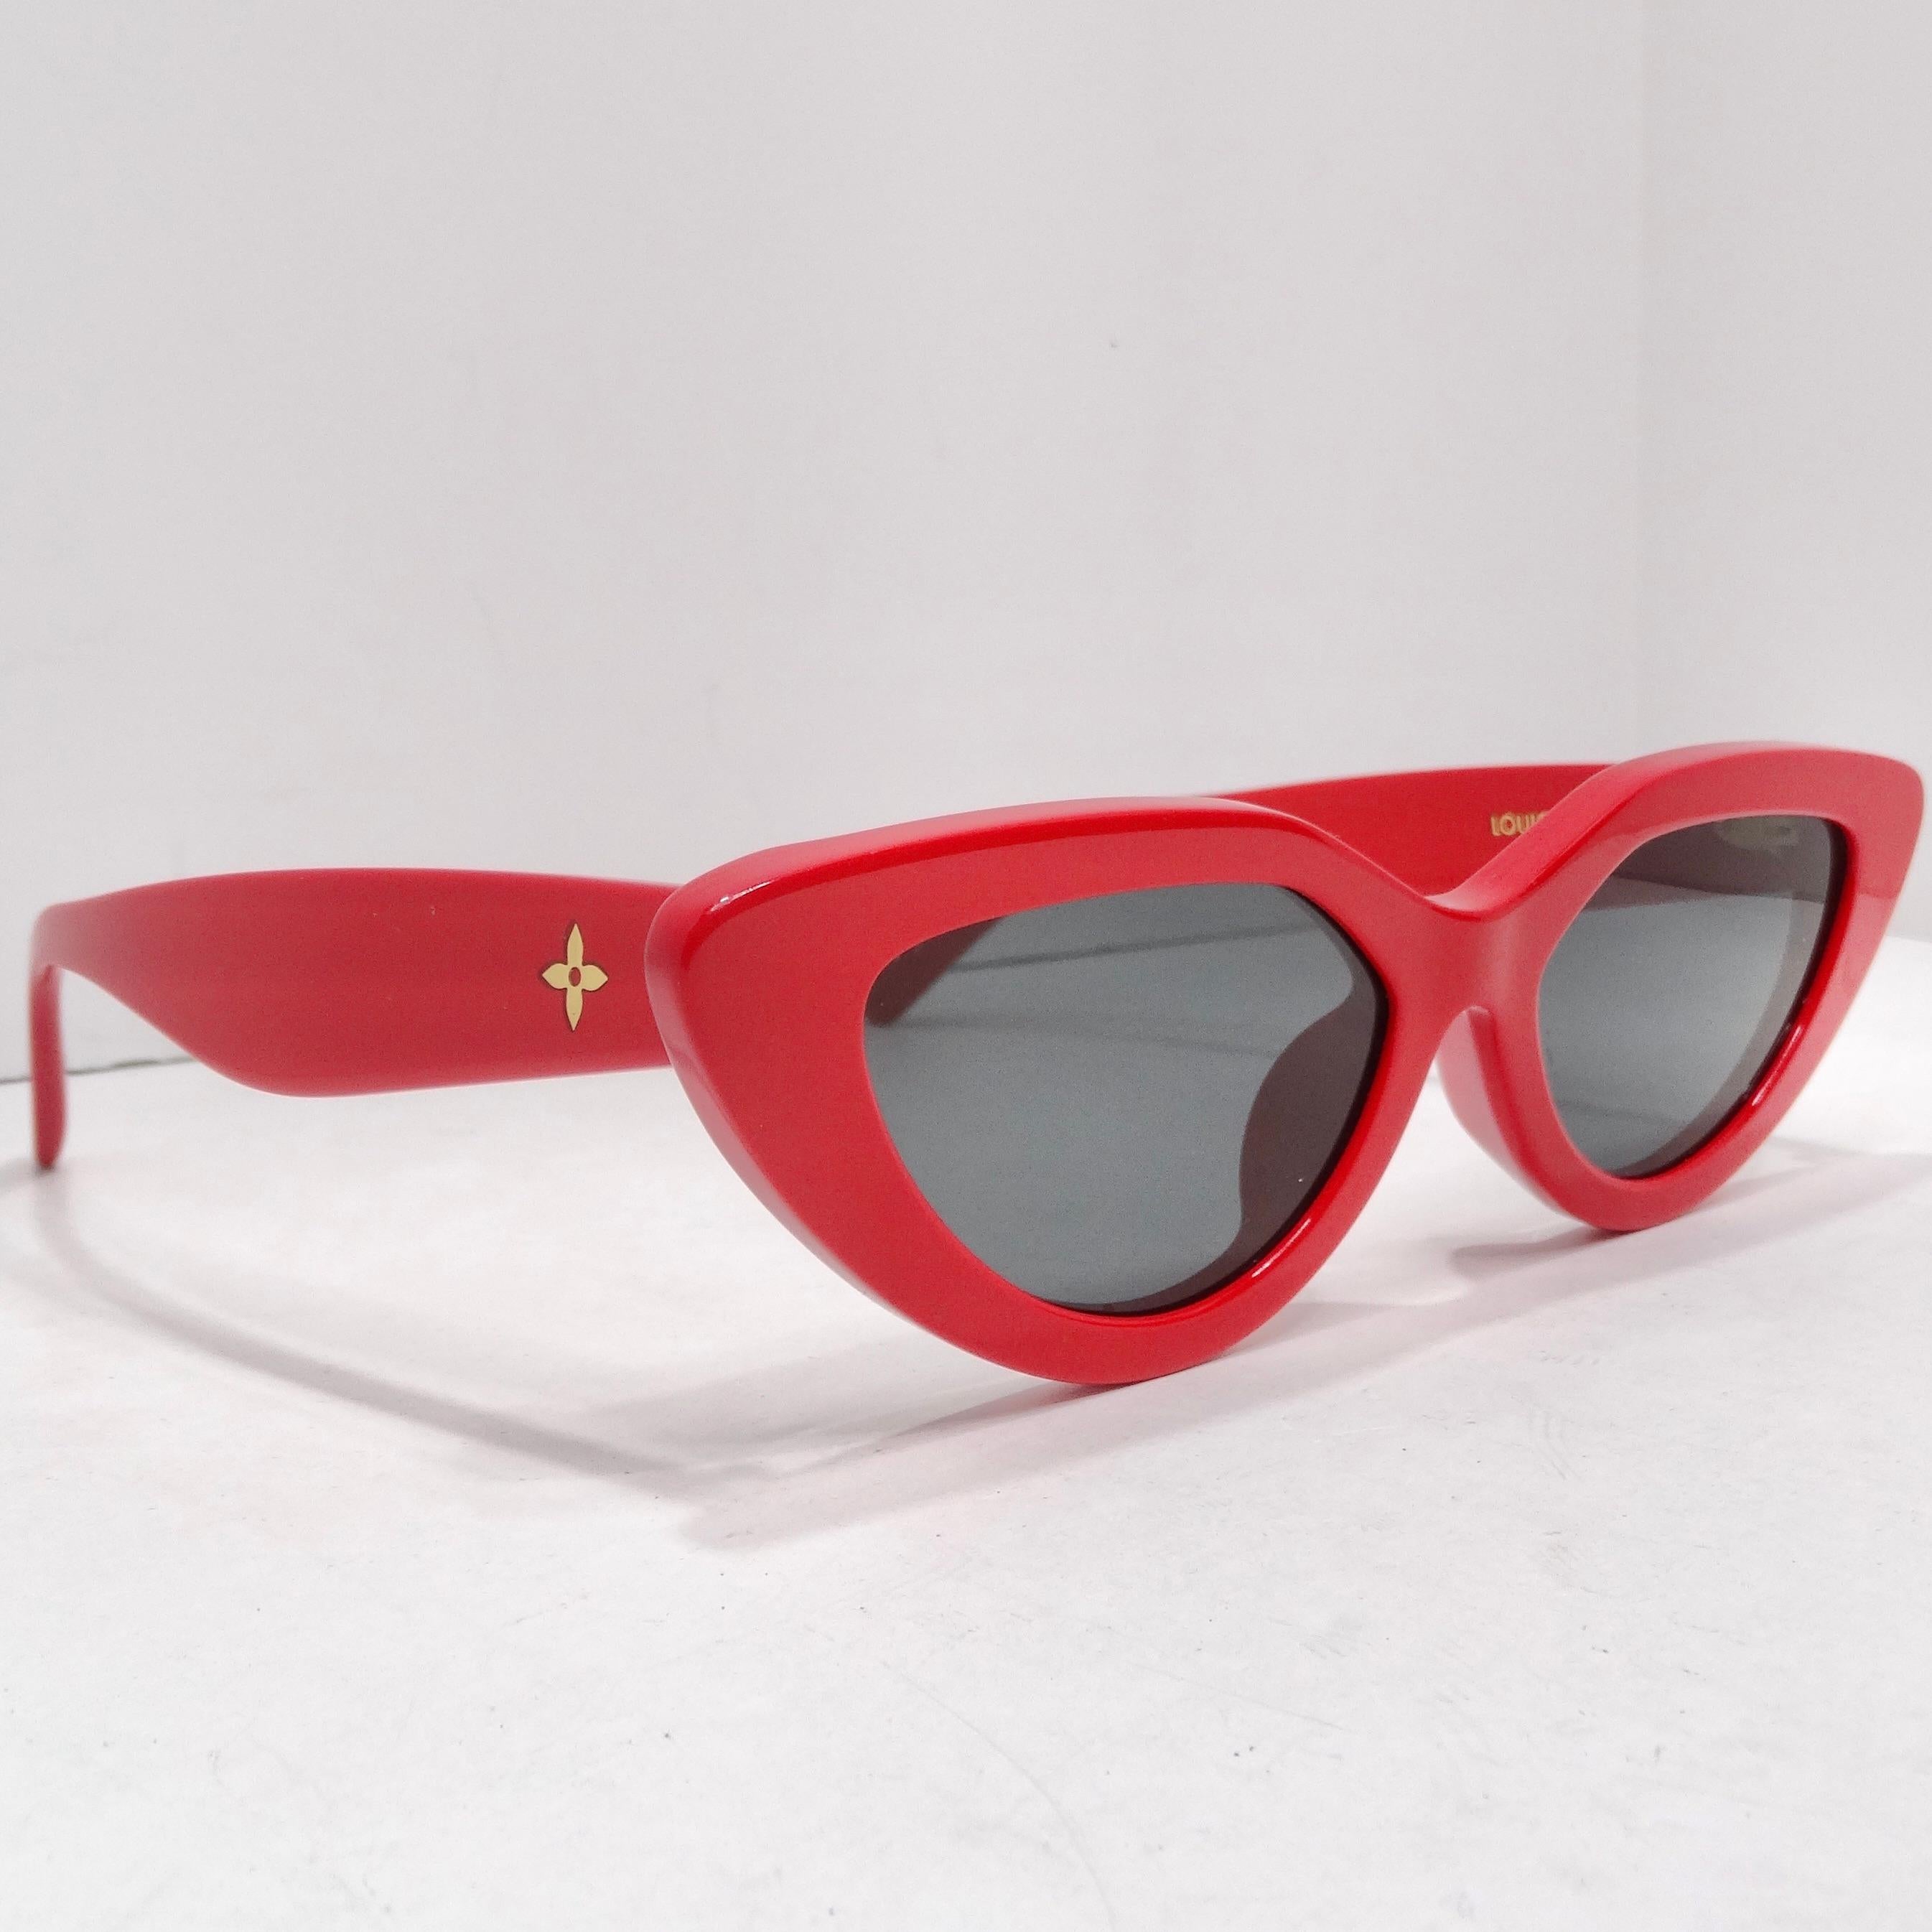 Holen Sie sich die Louis Vuitton My LV Cat Eye Sunglasses in Rot - ein kühnes und stilvolles Accessoire, das mühelos Luxus und modisches Design vereint. Werten Sie Ihre Brillenkollektion mit dieser auffälligen Sonnenbrille mit roten Cat-Eye-Felgen,